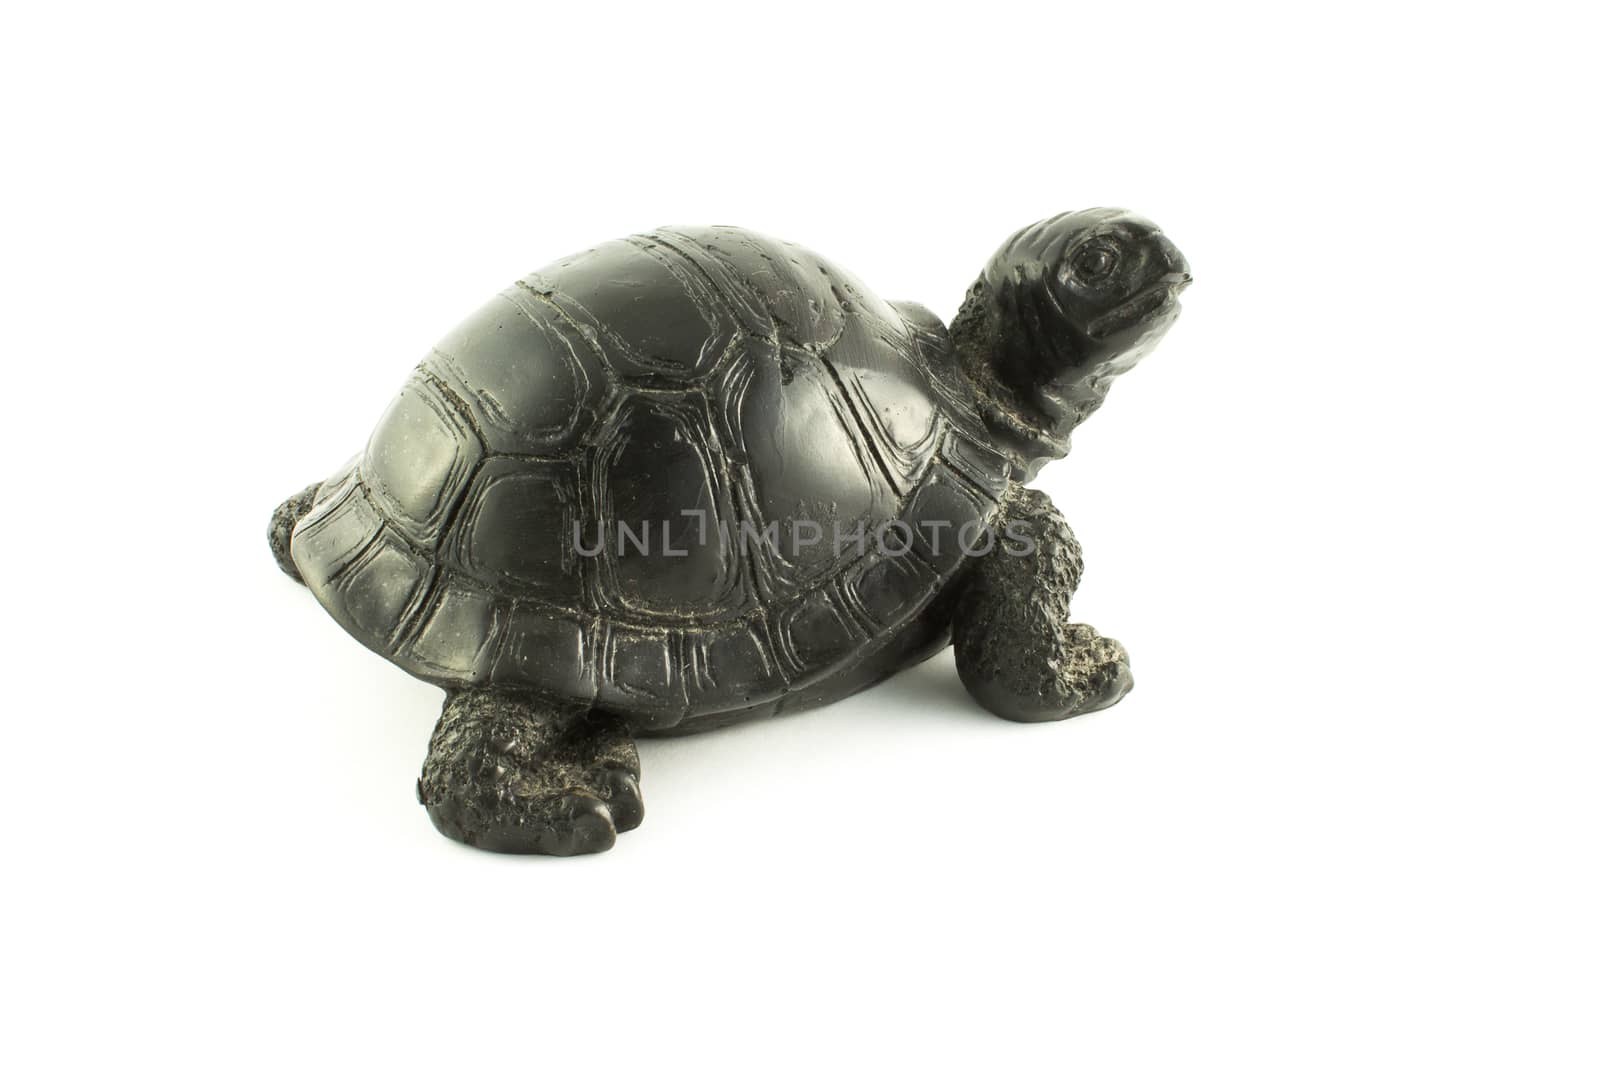 black tortoise souvenir on a white background